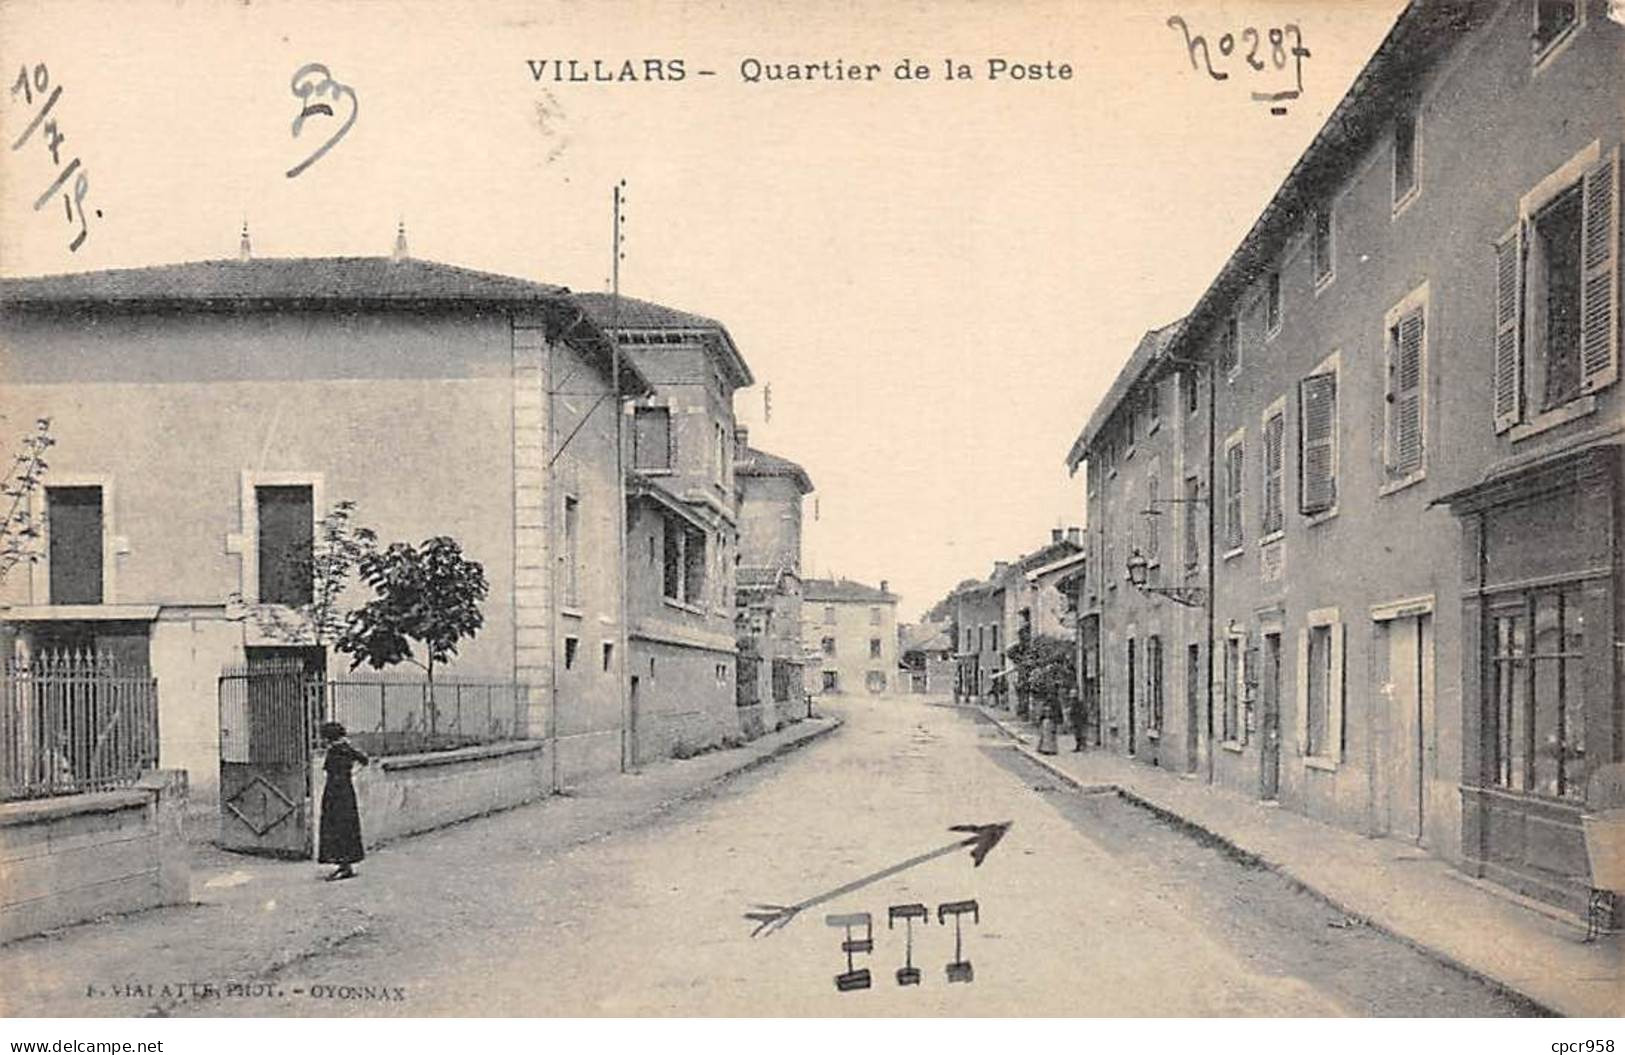 01 - VILLARS - SAN65110 - Quartier De La Poste - Villars-les-Dombes